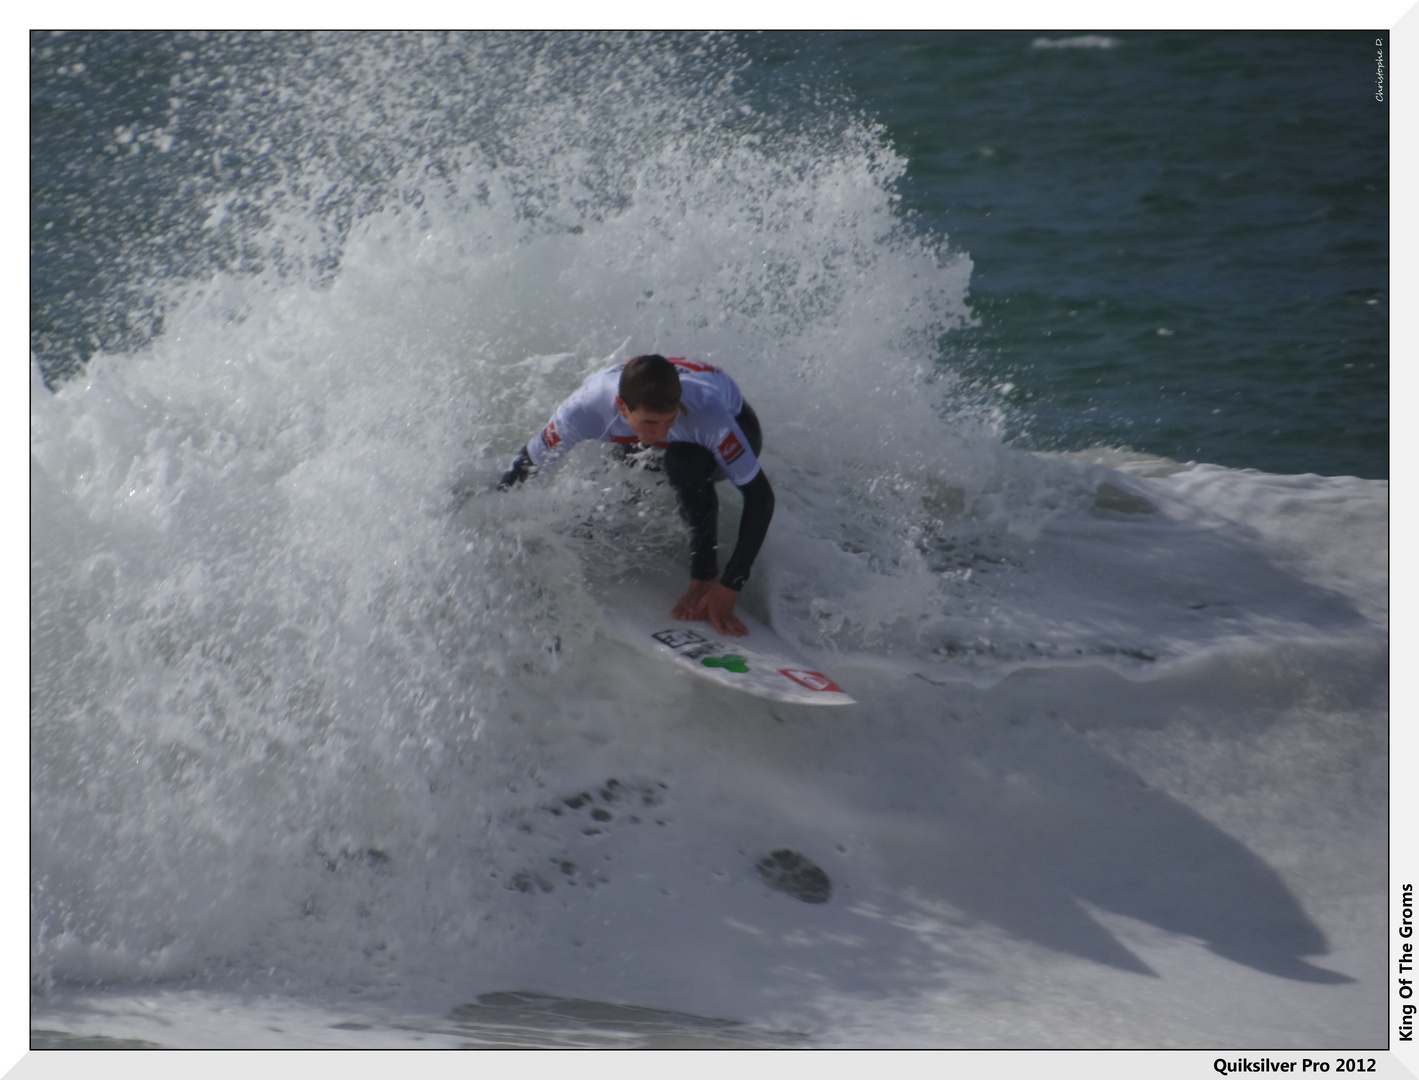 Championnats du monde de surf 2012 - KOTG #3 -